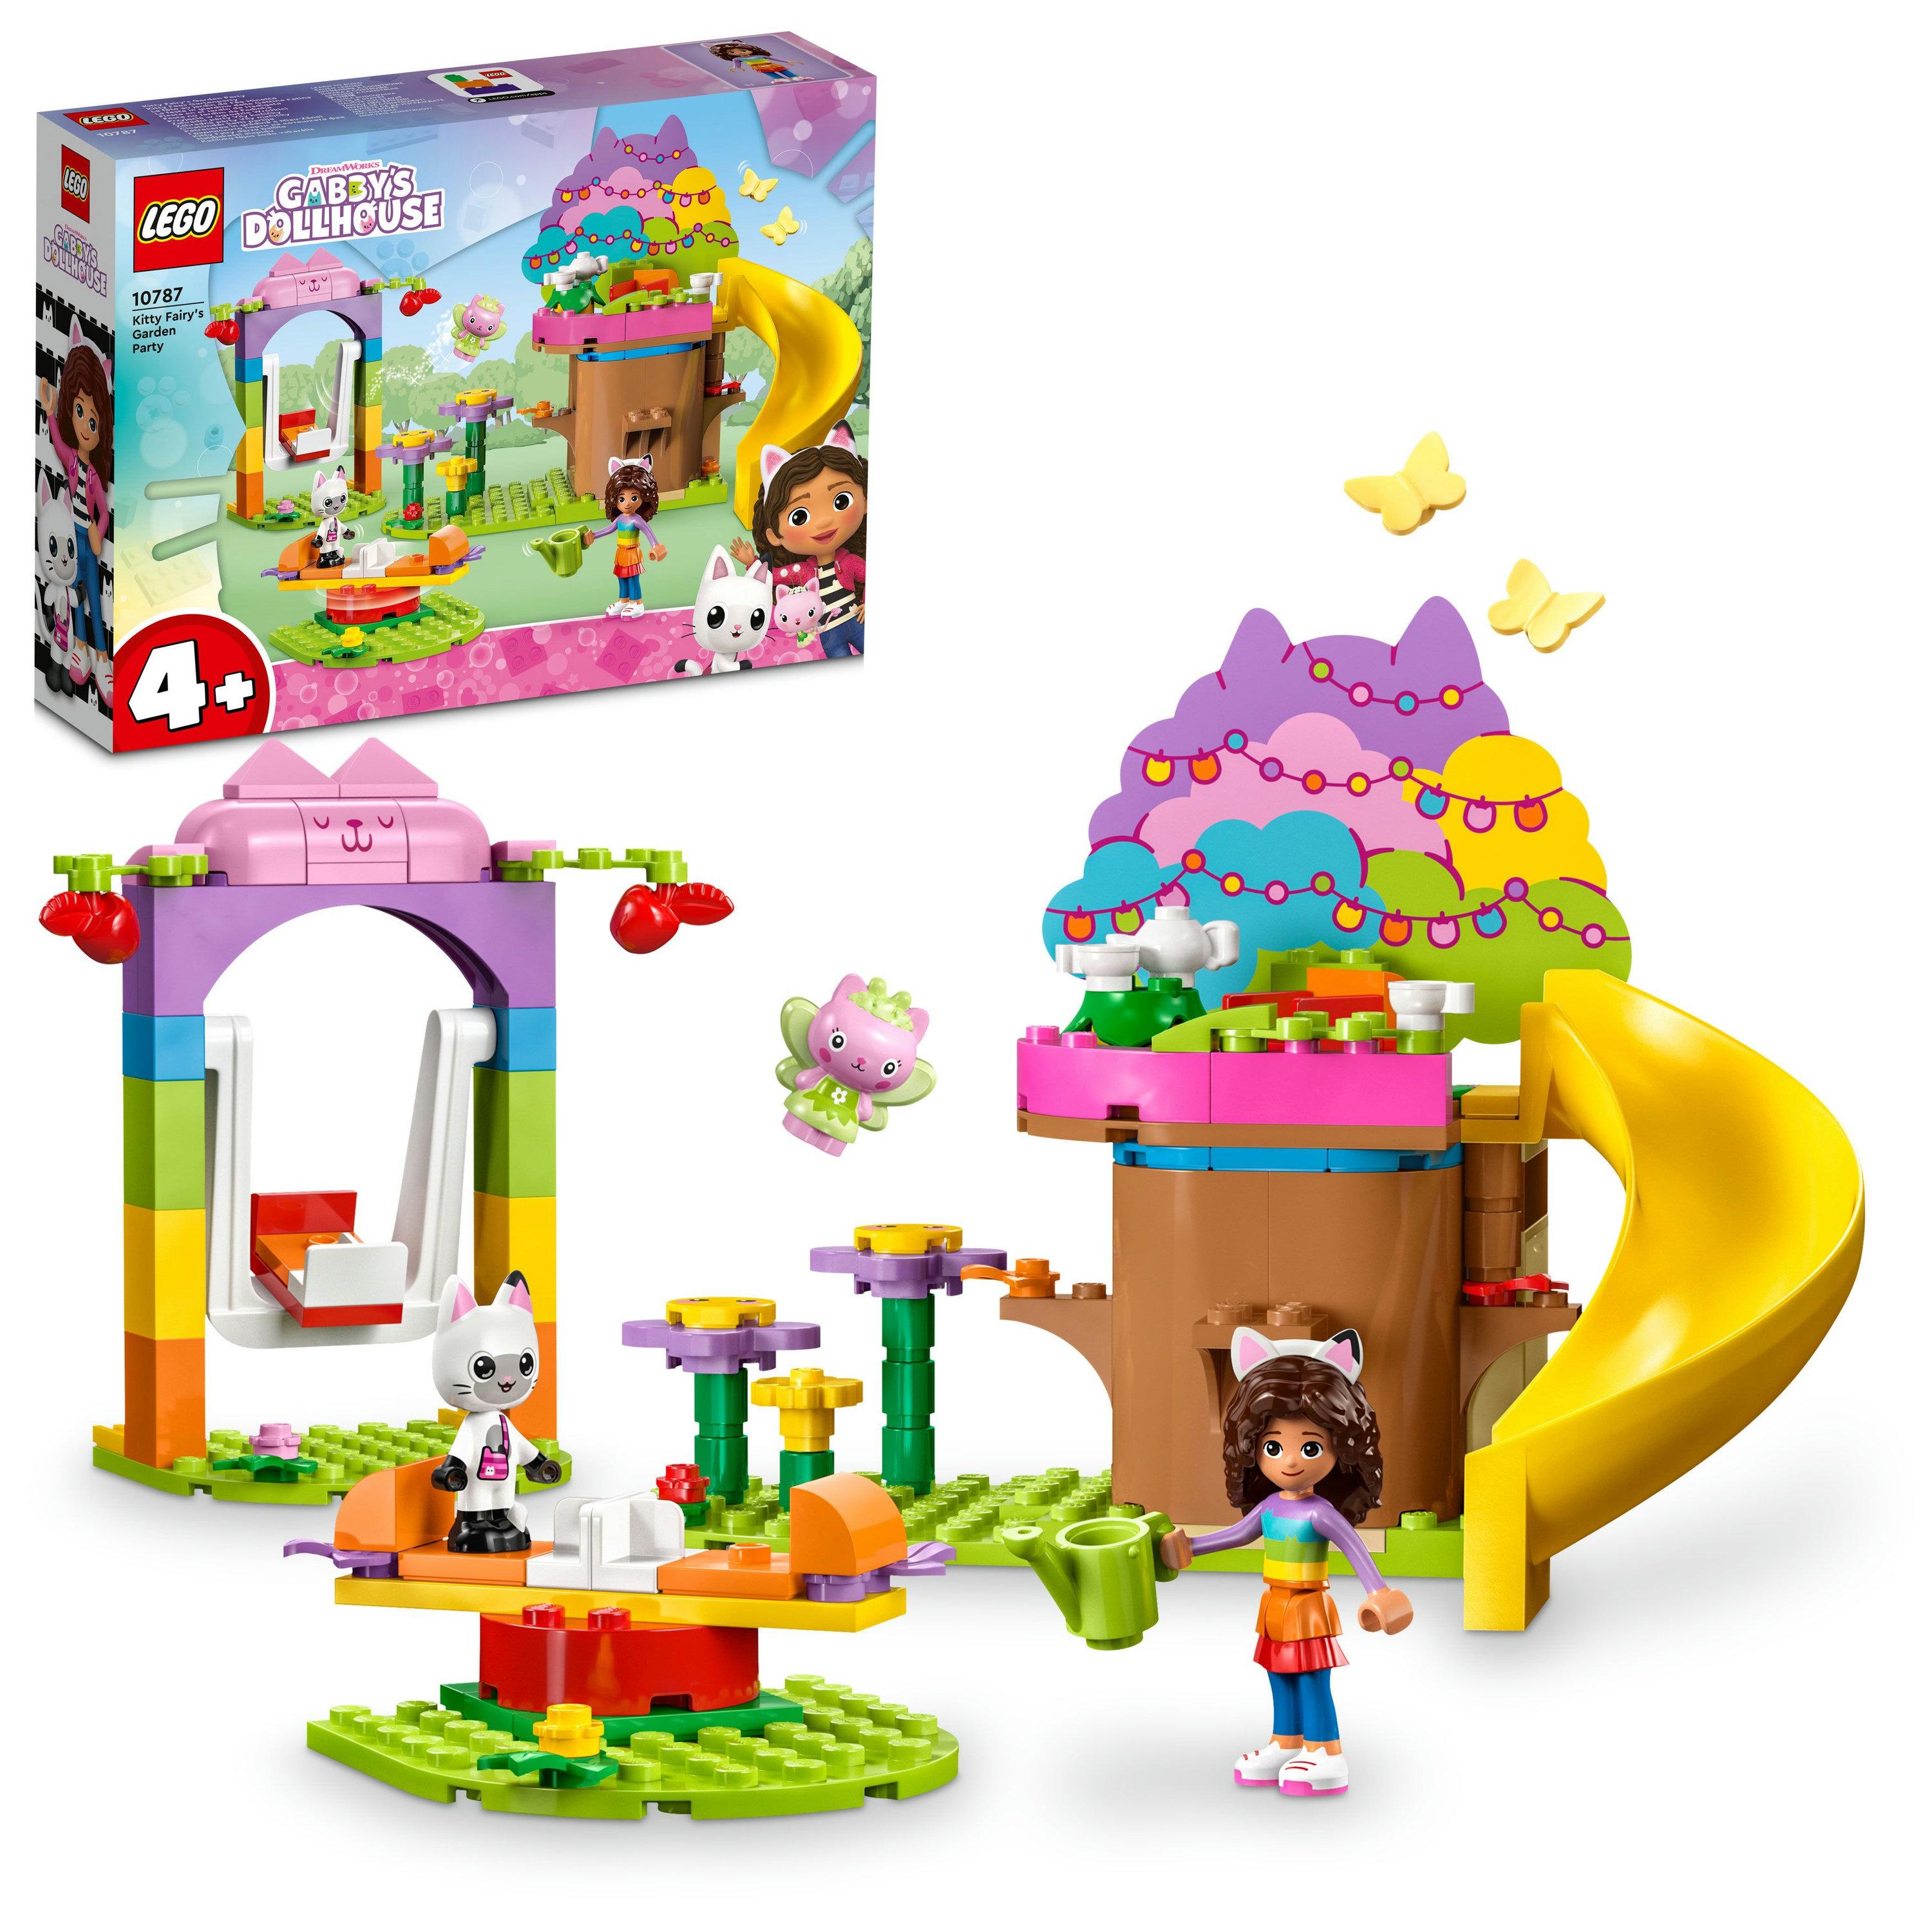 LEGO® Gabby’s Dollhouse – Kitty Fairy’s Garden Party | 10787